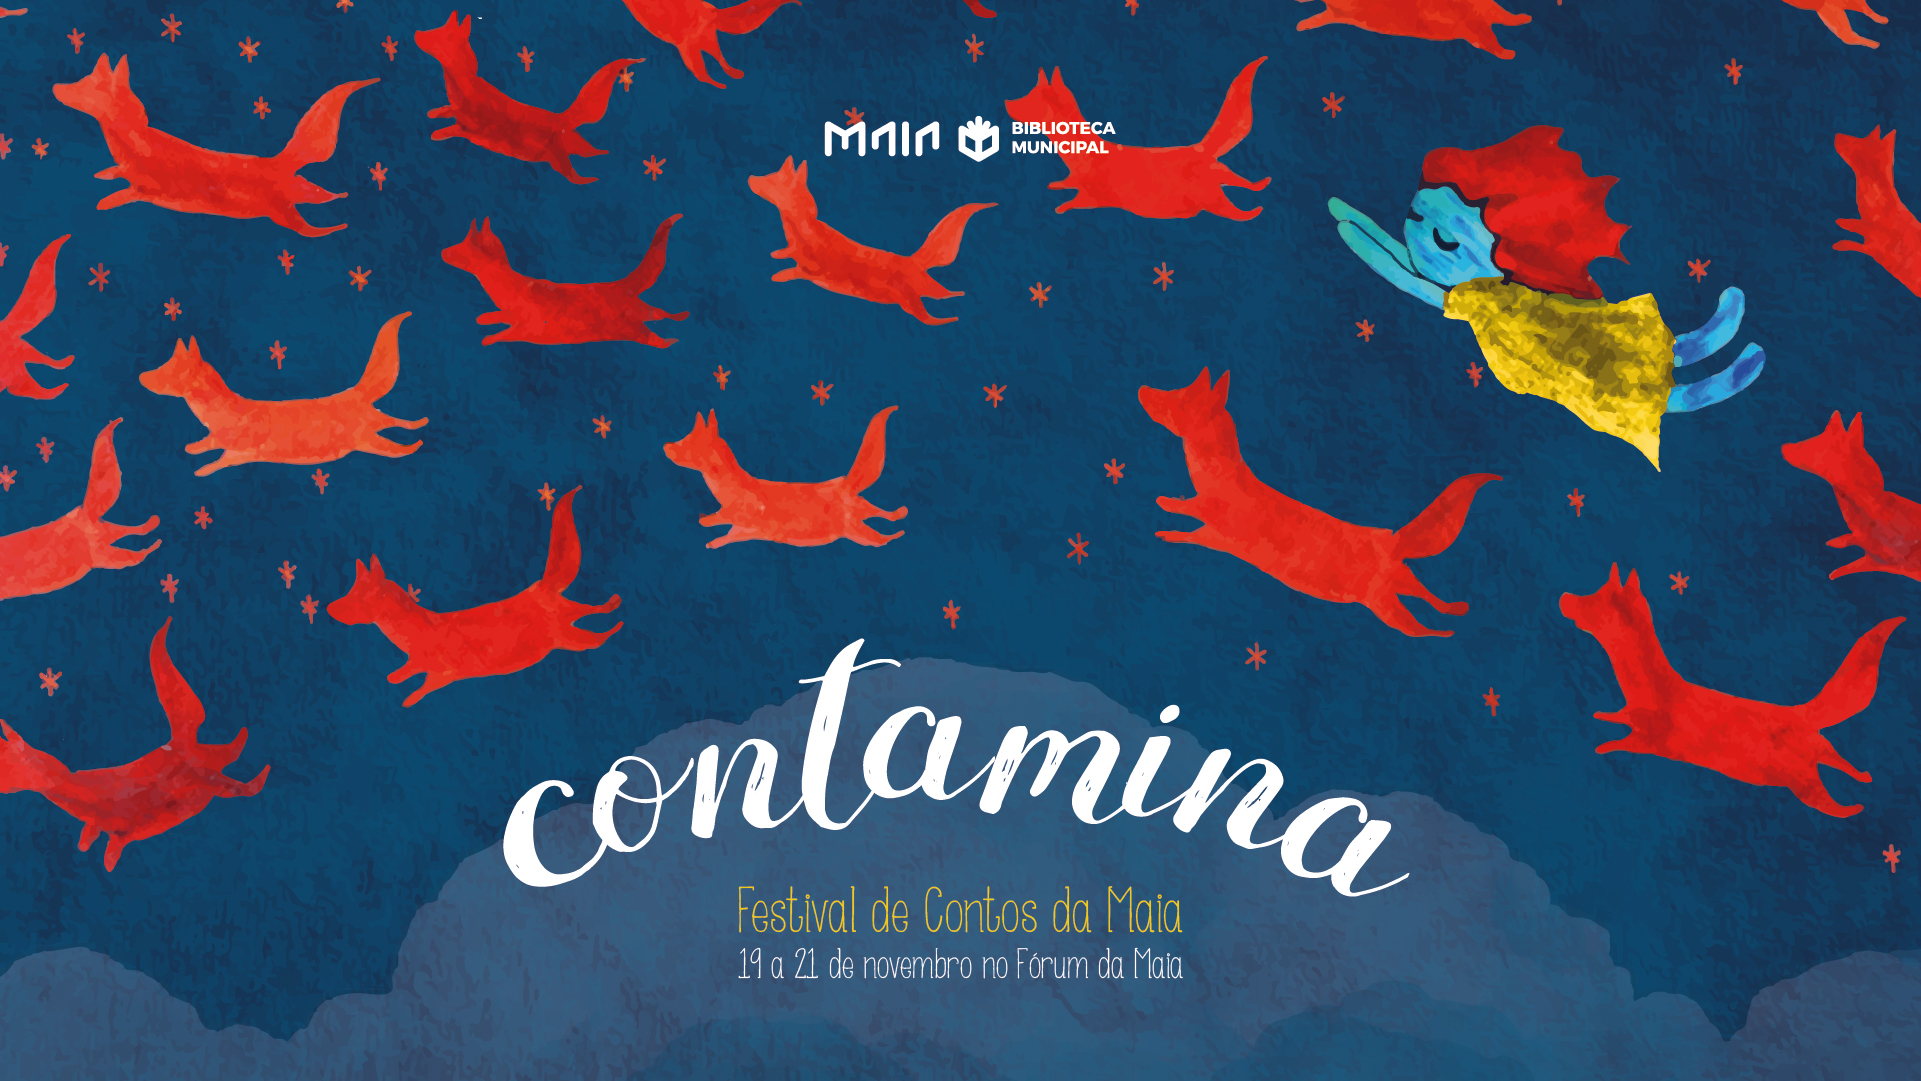 CONTAMINA – Festival de contos da Maia